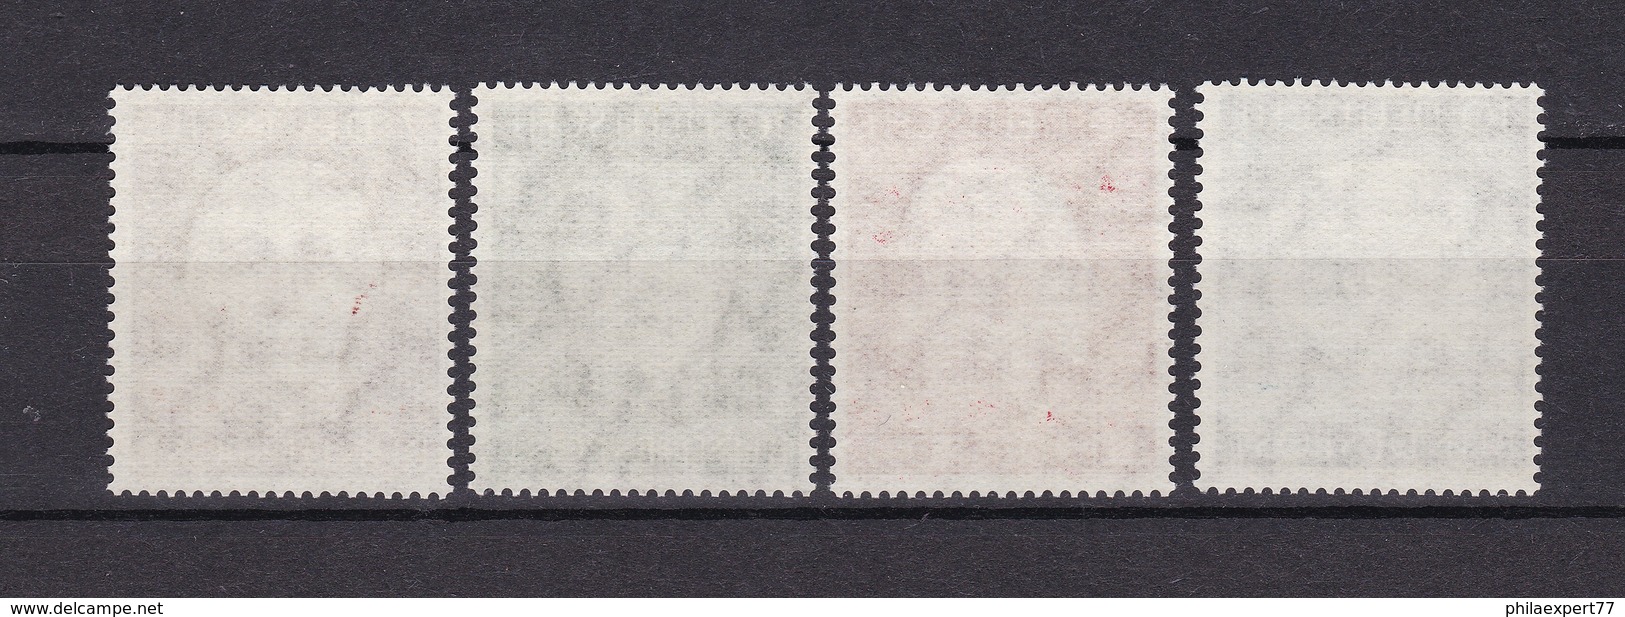 BRD - 1954 - Michel Nr. 200/203 - Postfrisch - 55 Euro - Ungebraucht